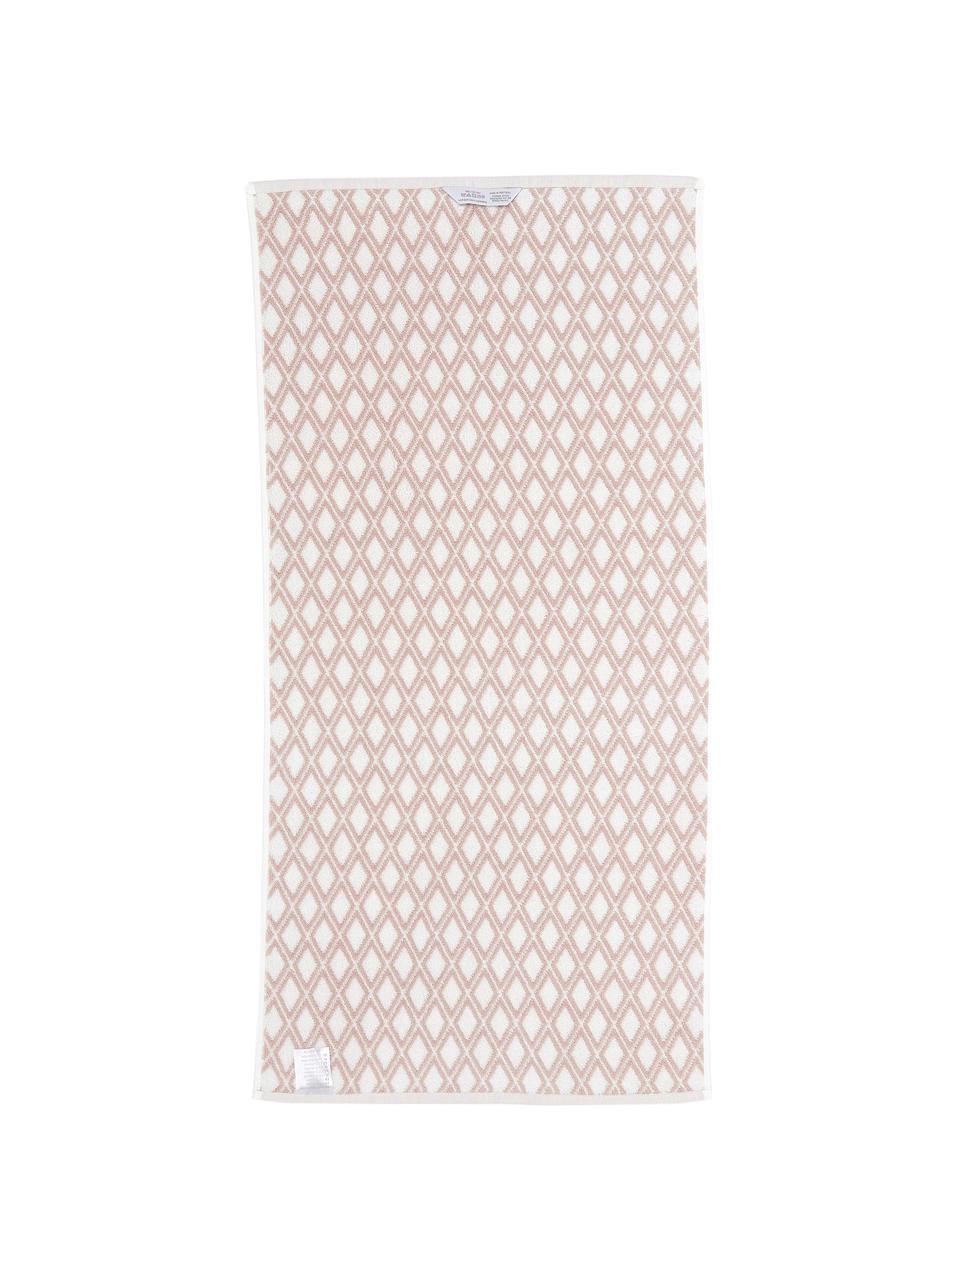 Wende-Handtuch Ava mit grafischem Muster, Rosa, Cremeweiss, Handtuch, B 50 x L 100 cm, 2 Stück